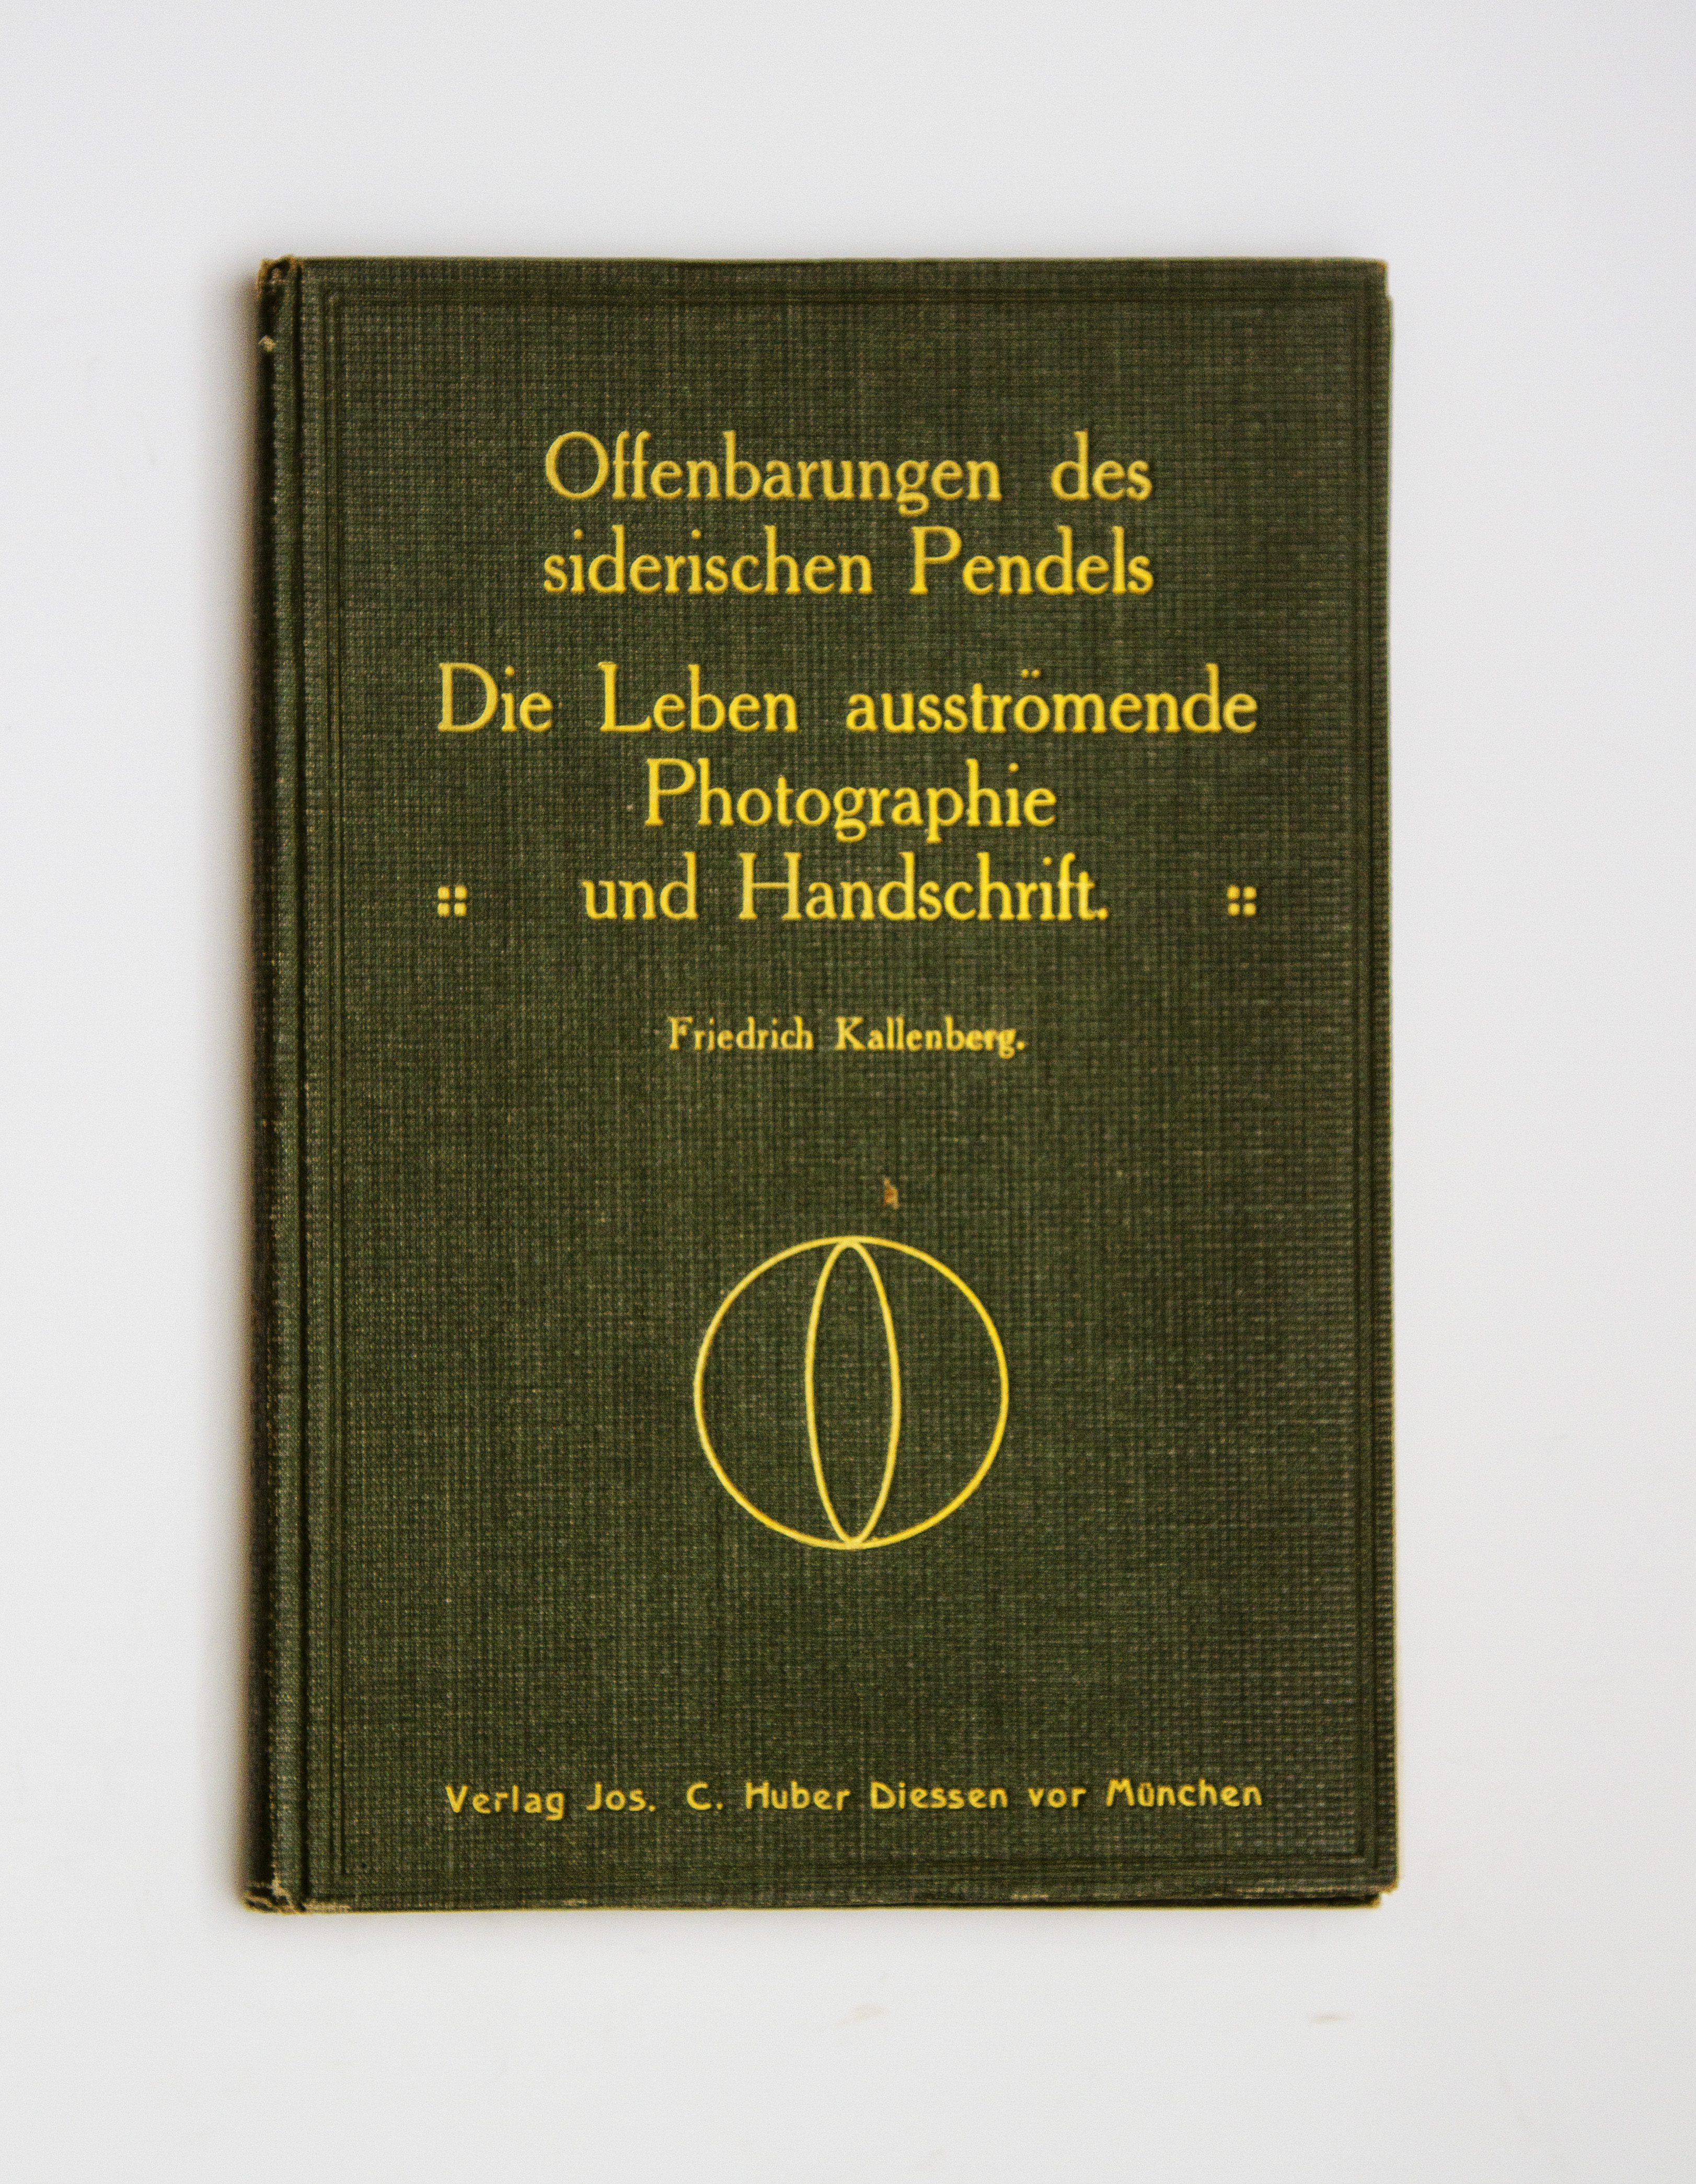 Offenbarungen des siderischen Pendels. Die Leben ausströmende Photographie und Handschrift.